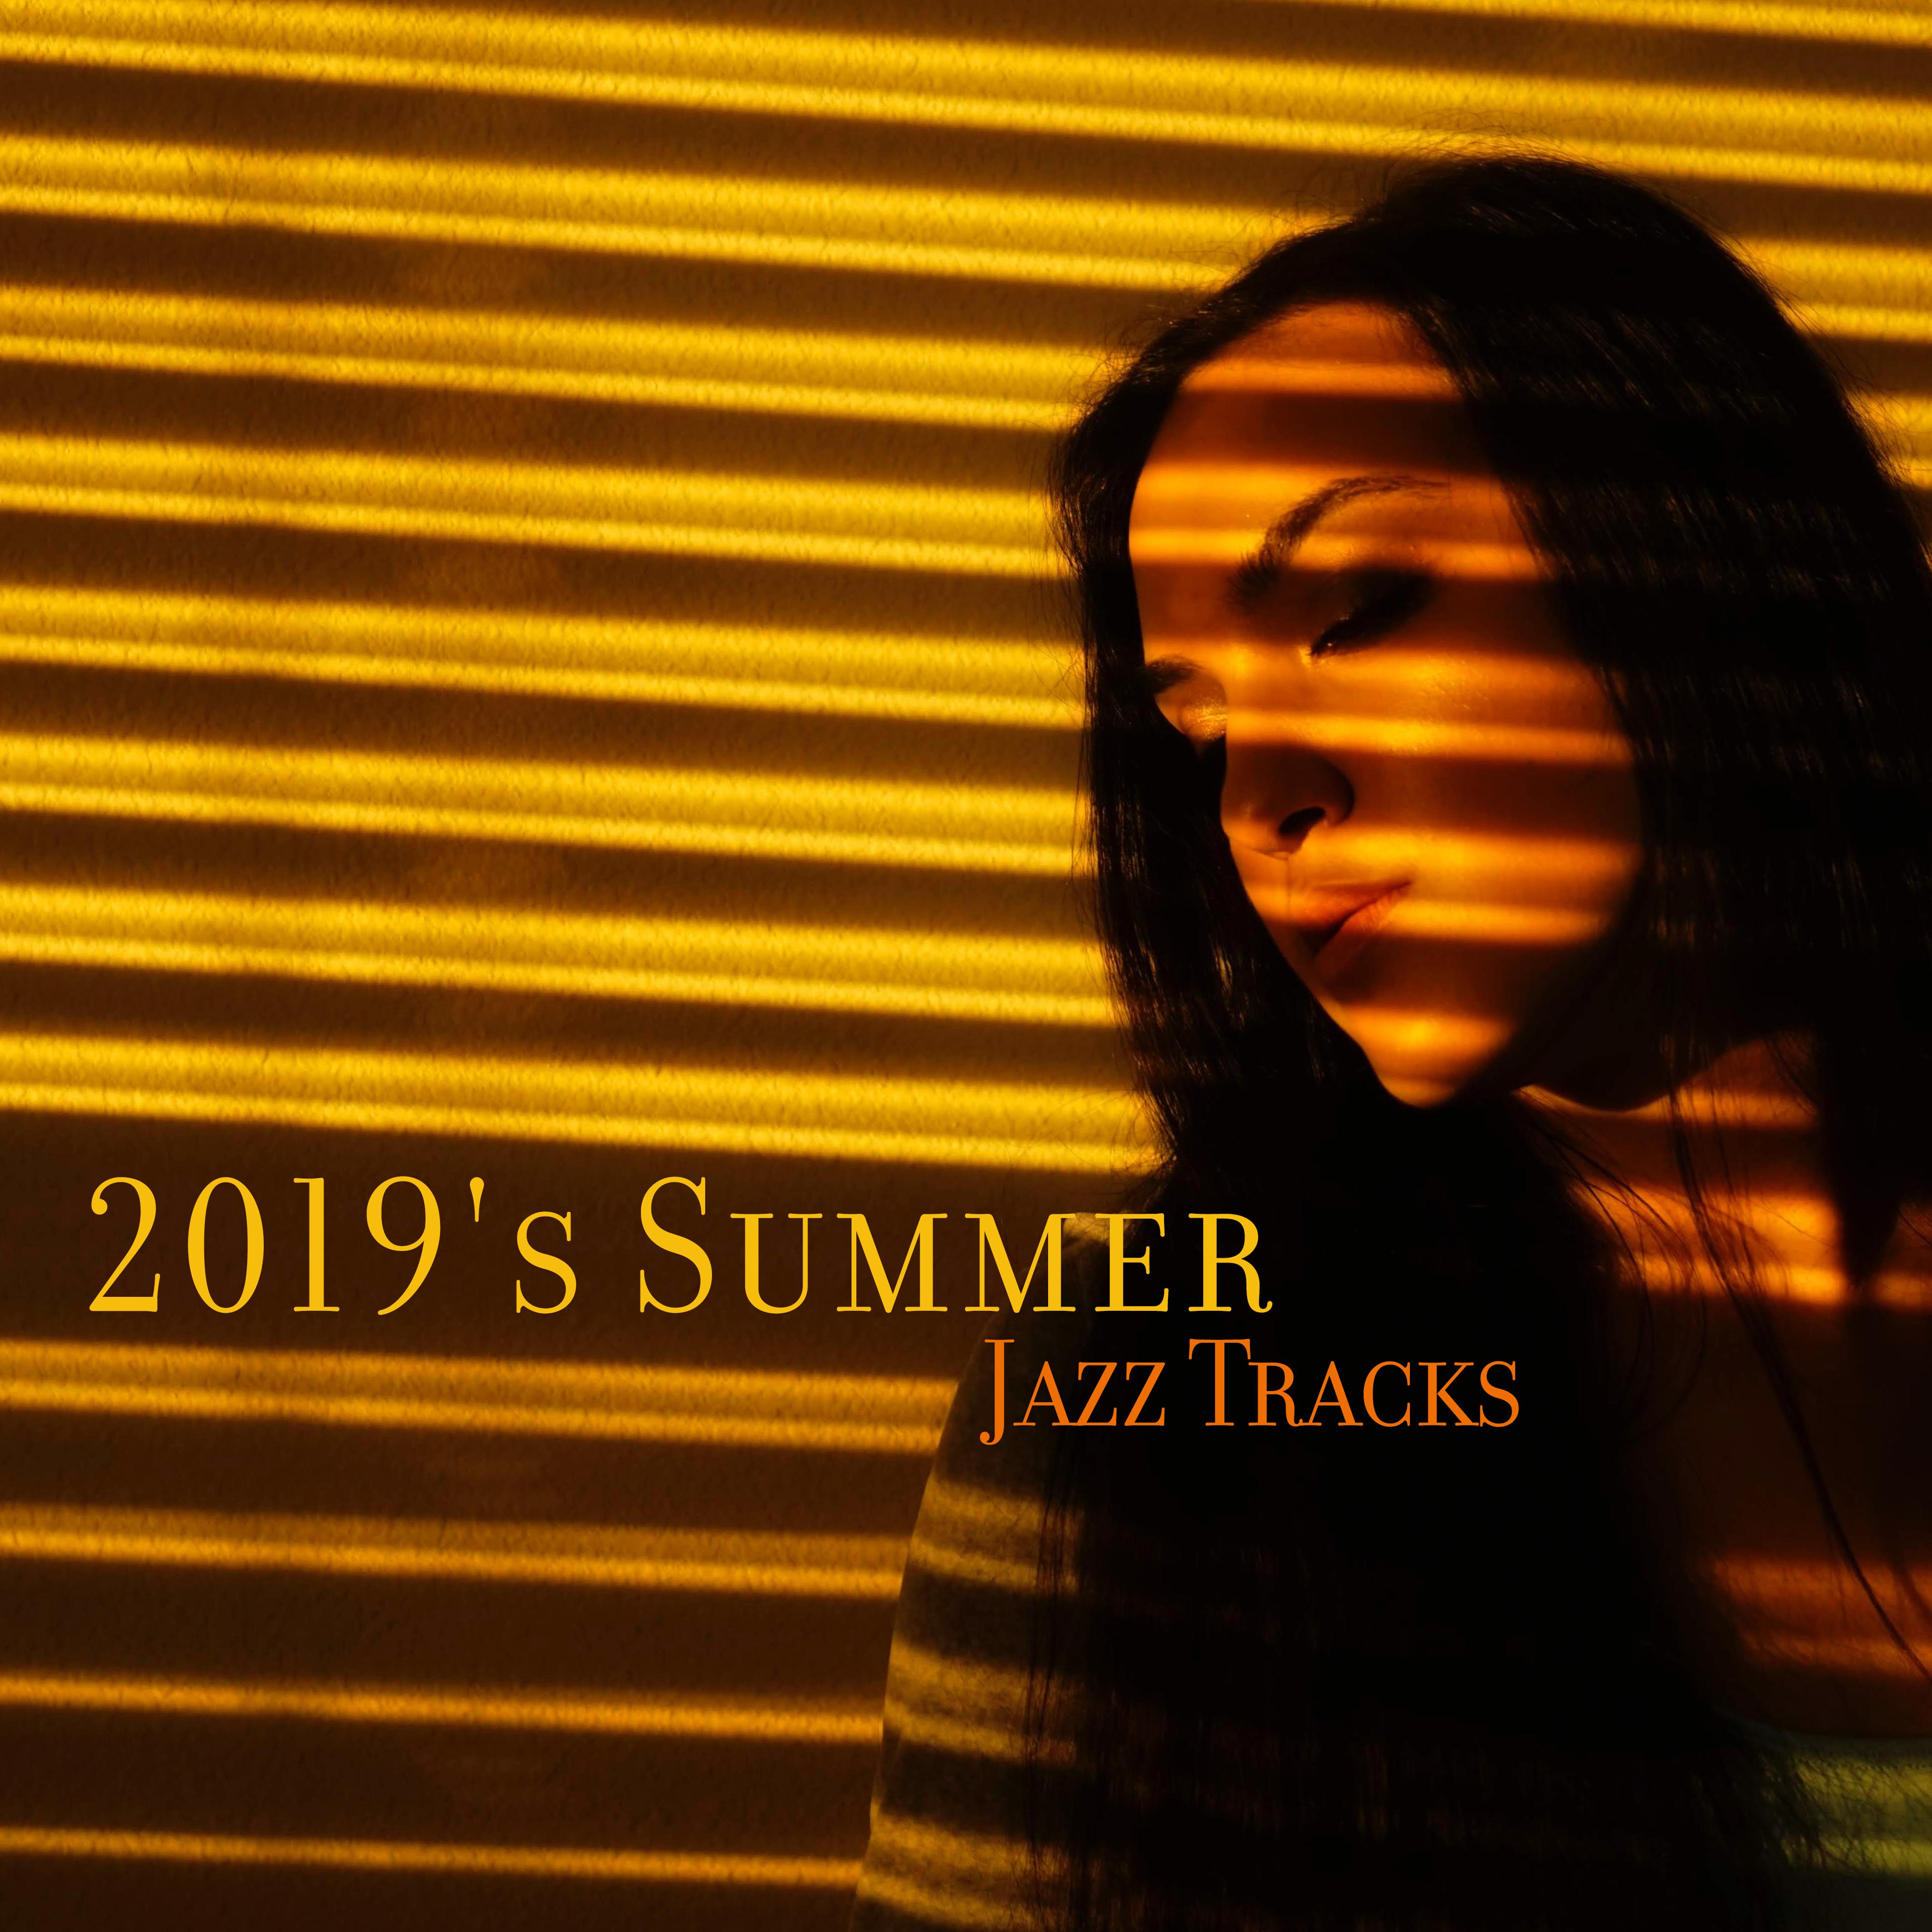 2019's Summer Jazz Tracks